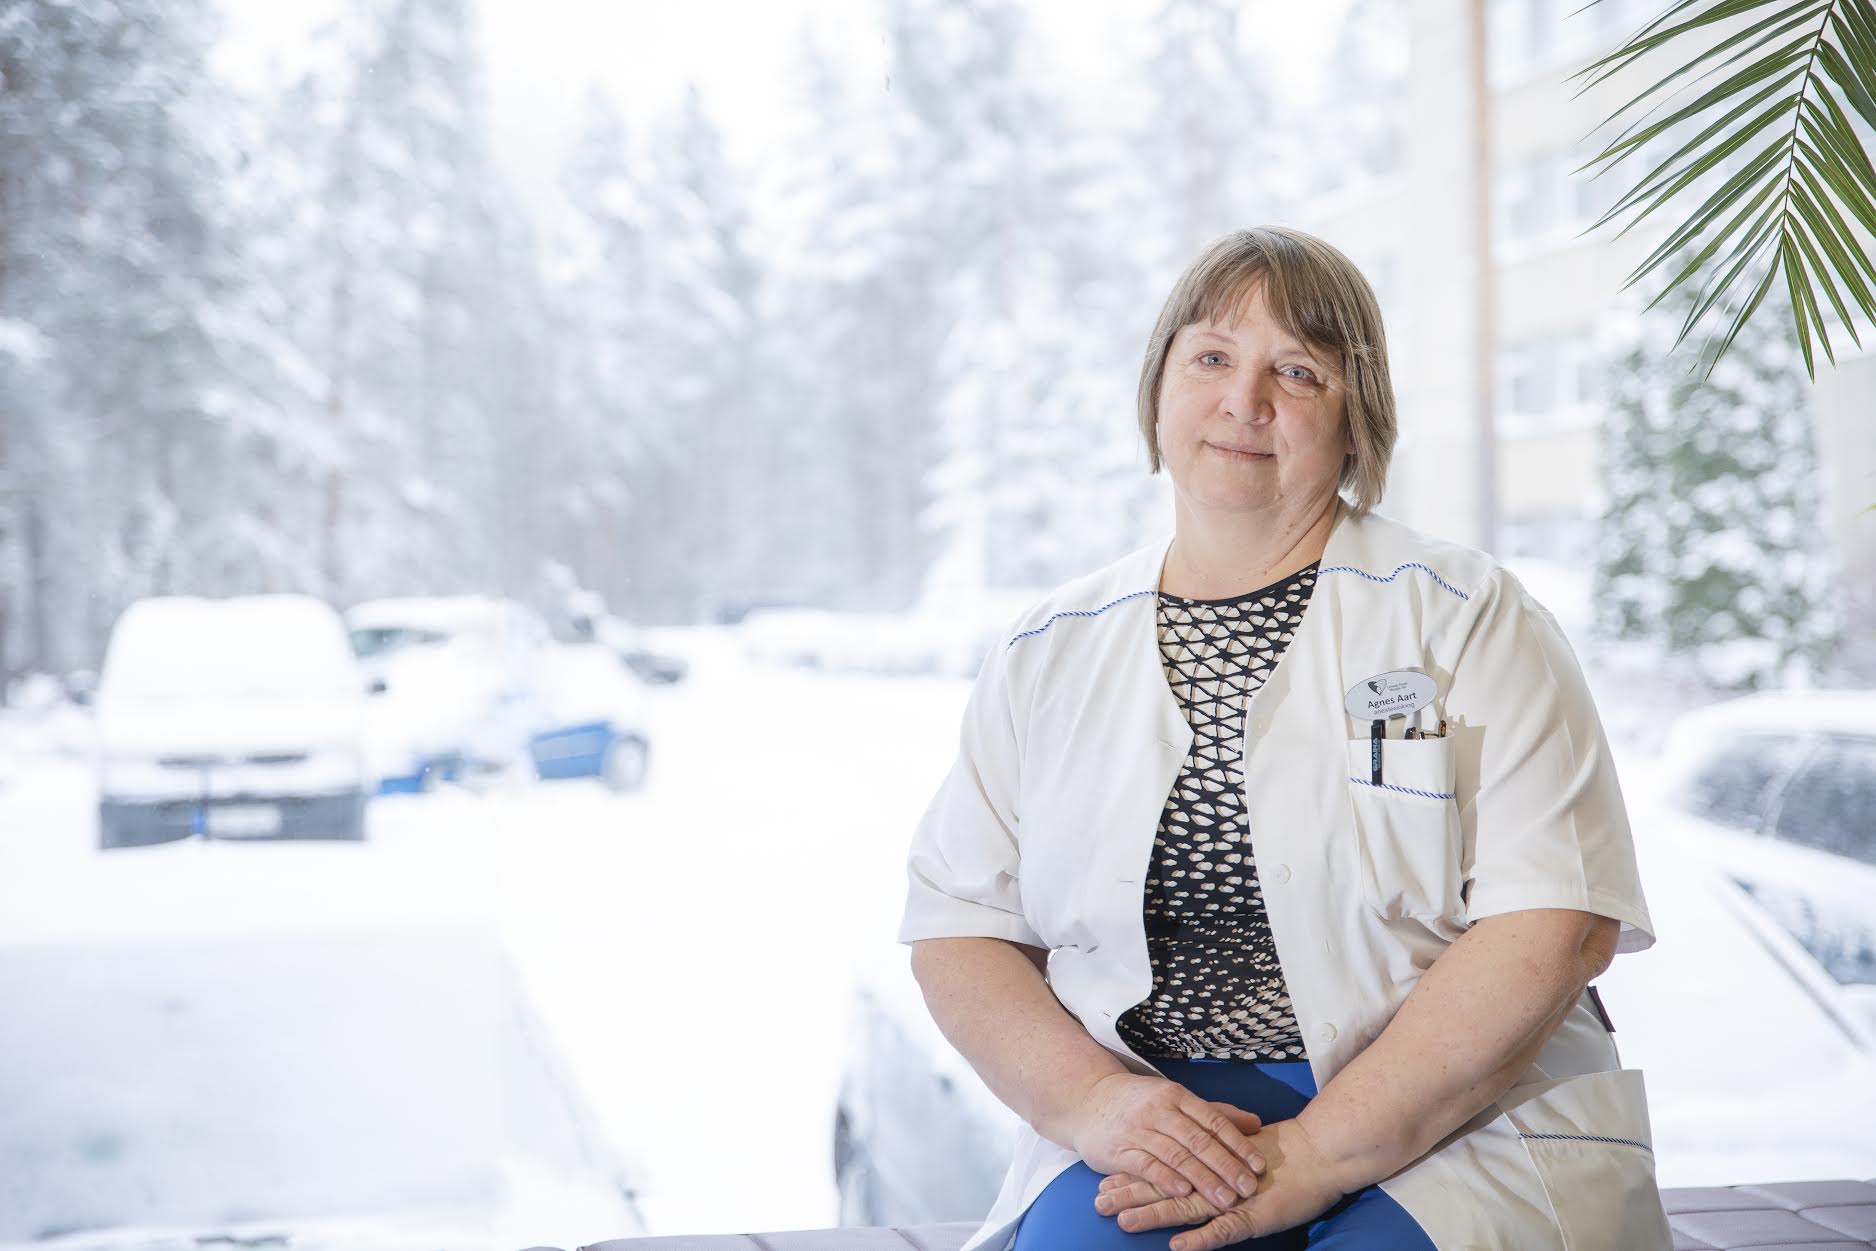 Lõuna-Eesti haigla ravijuht Agnes Aart soovib tõsta inimeste teadlikkust elundidoonorluse teemal. Foto: AIGAR NAGEL